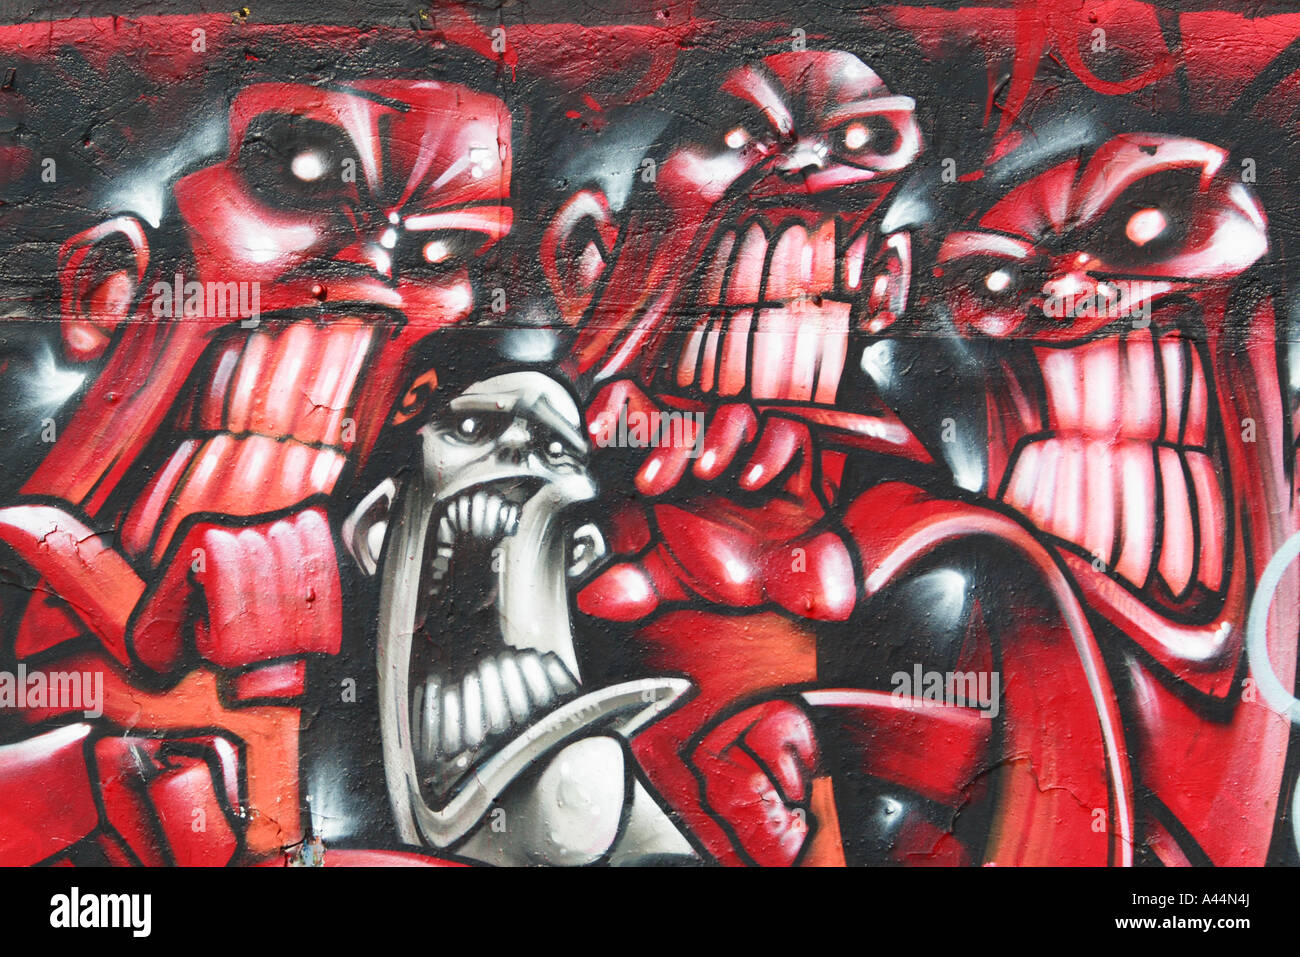 Graffitti Wall art Stock Photo